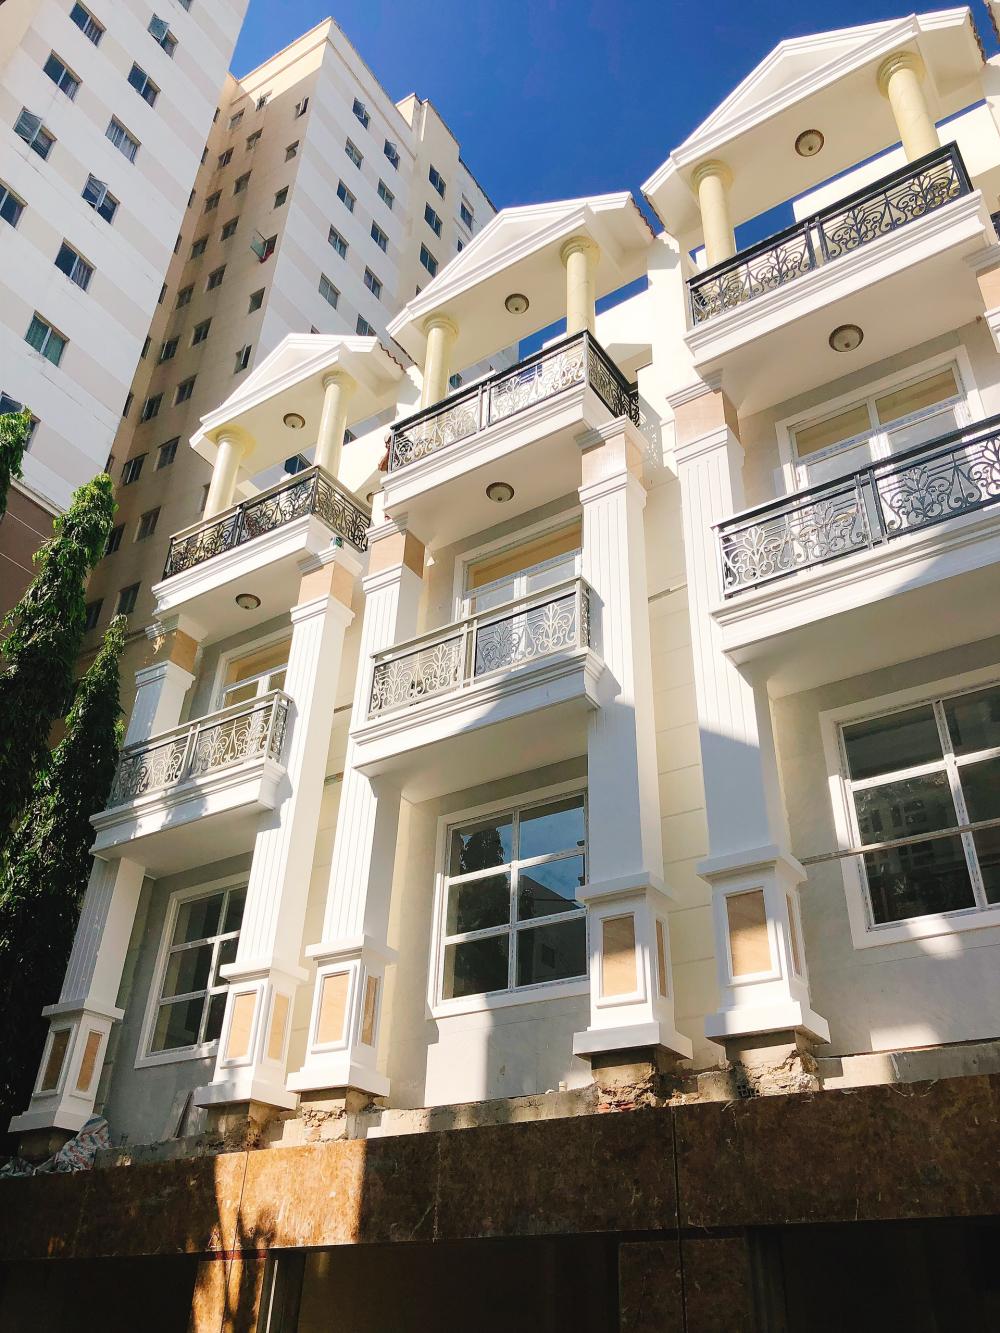 Cơ hội đầu tư sinh lời ngay, bán nhà đường Số 18, Phạm Văn Đồng, khu thành ủy. 1 trệt 2 lầu, 60m2